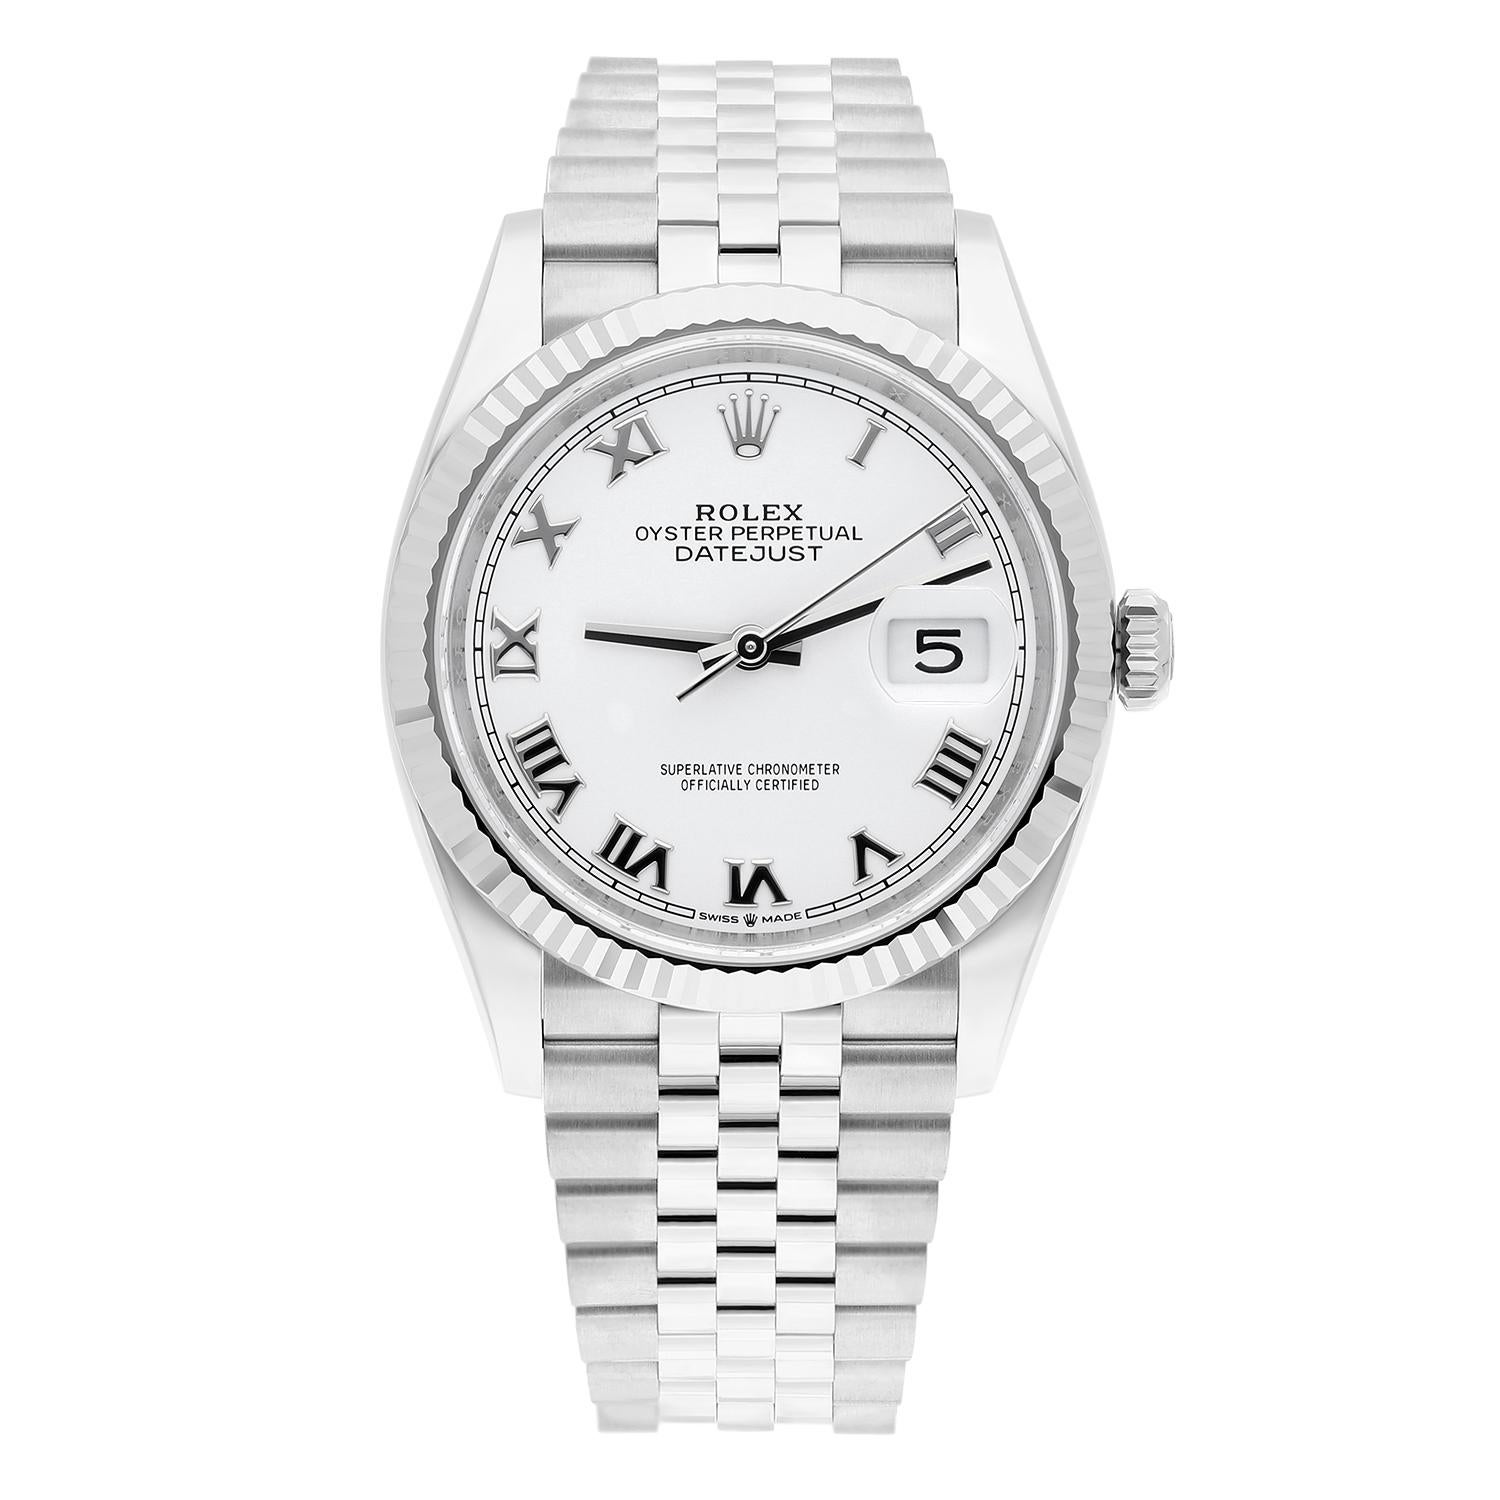 Cette montre-bracelet Rolex Datejust est un garde-temps de luxe doté d'un boîtier rond de 36 mm en acier inoxydable et d'un cadran blanc avec chiffres romains. La montre est dotée d'une lunette cannelée et fixe en or blanc 18 carats et est étanche